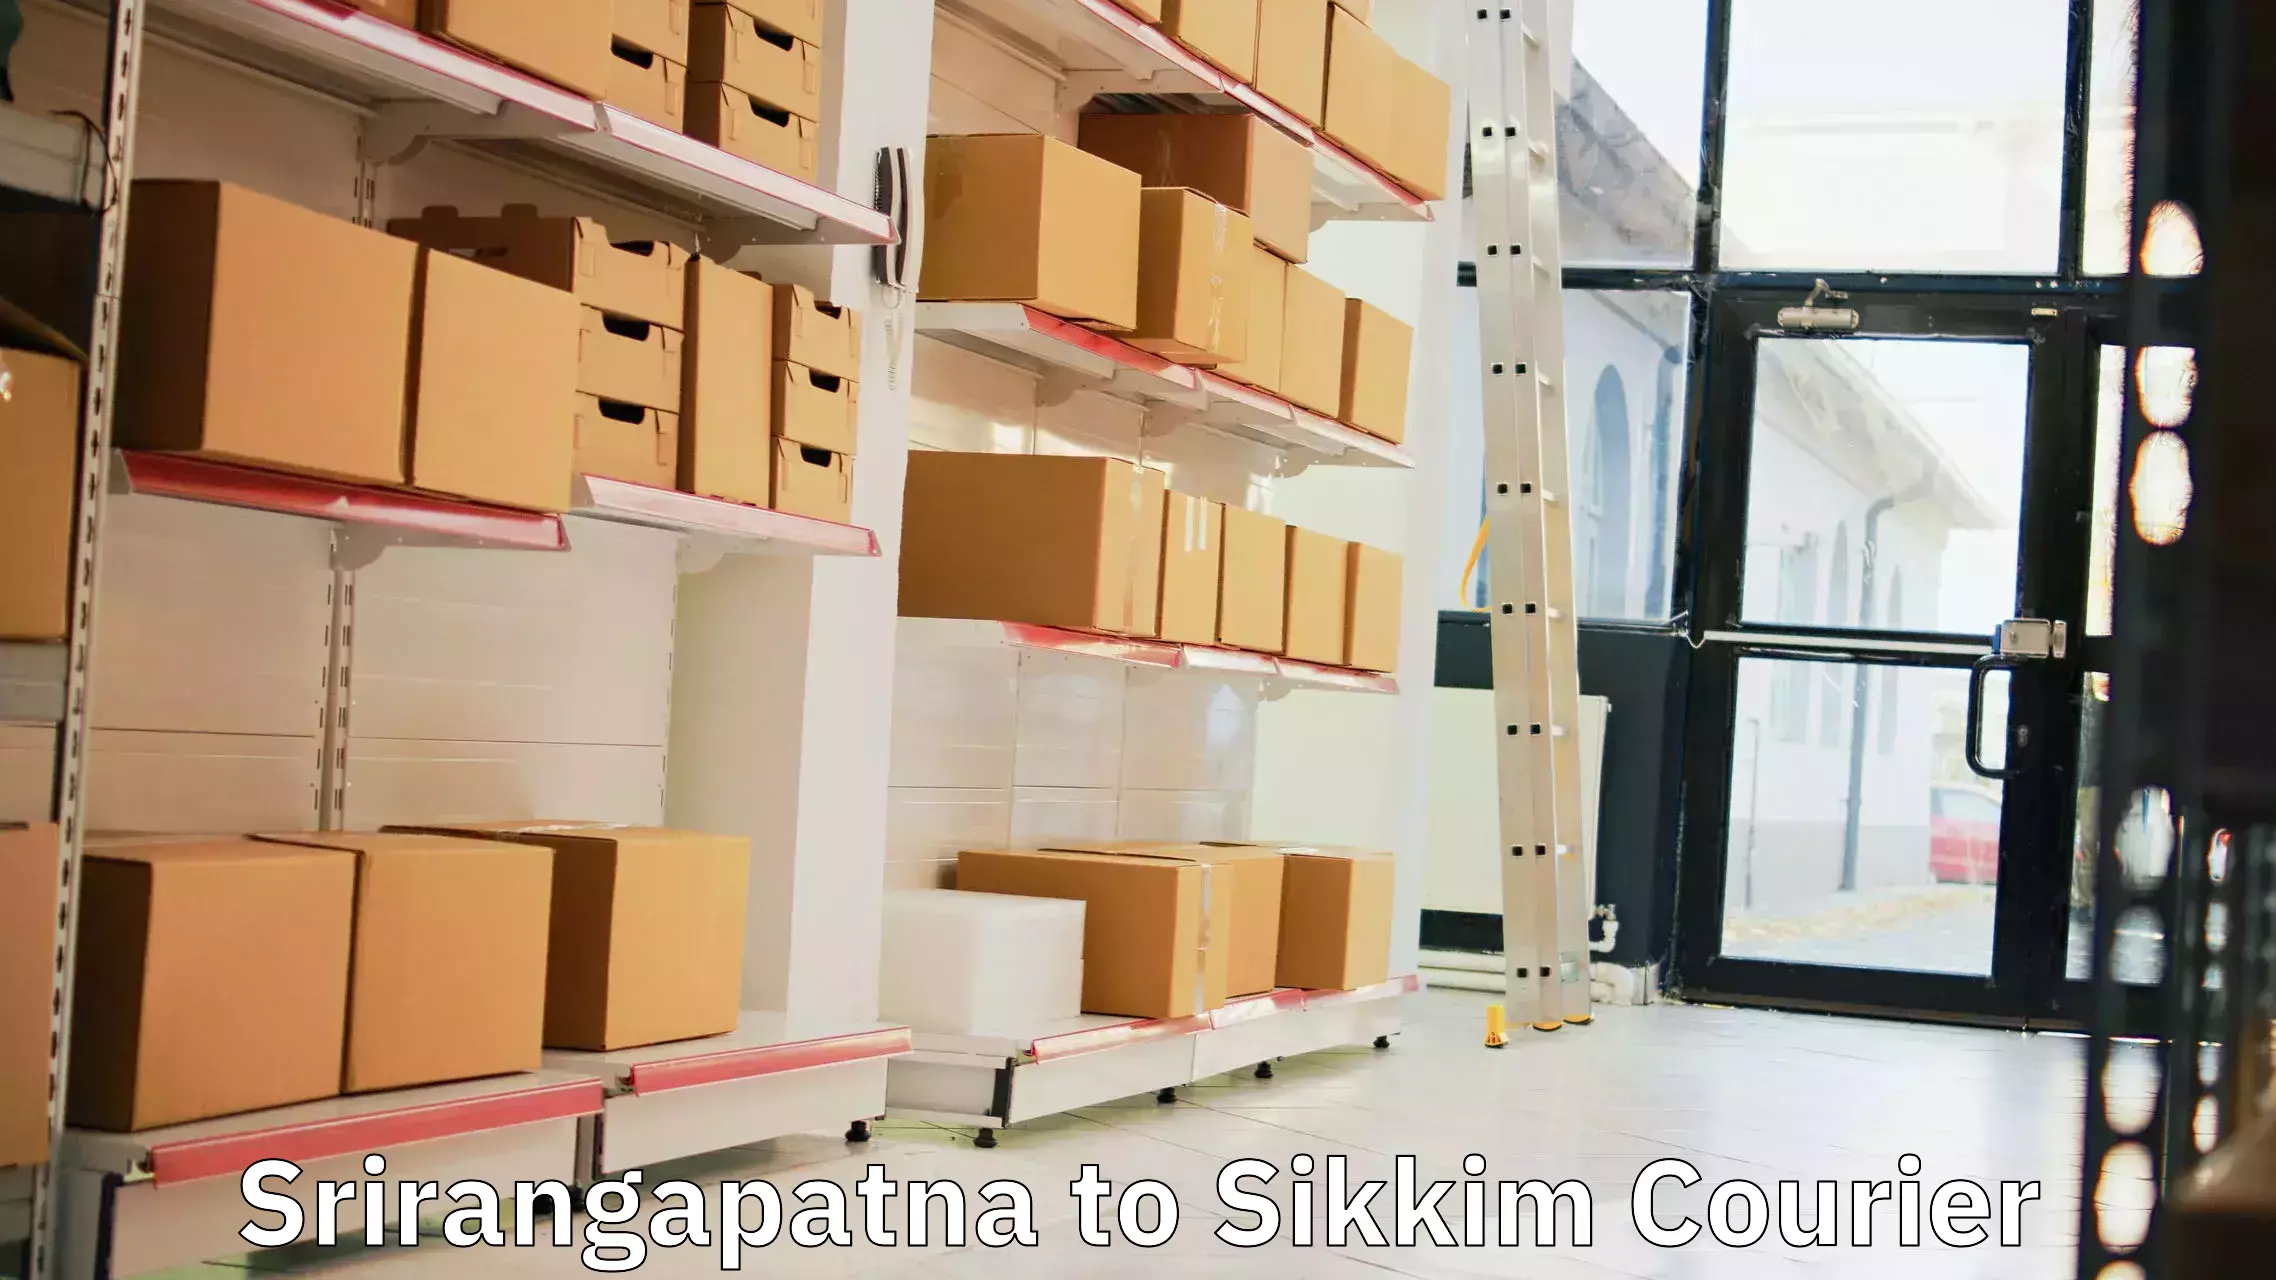 Pharmaceutical courier Srirangapatna to North Sikkim